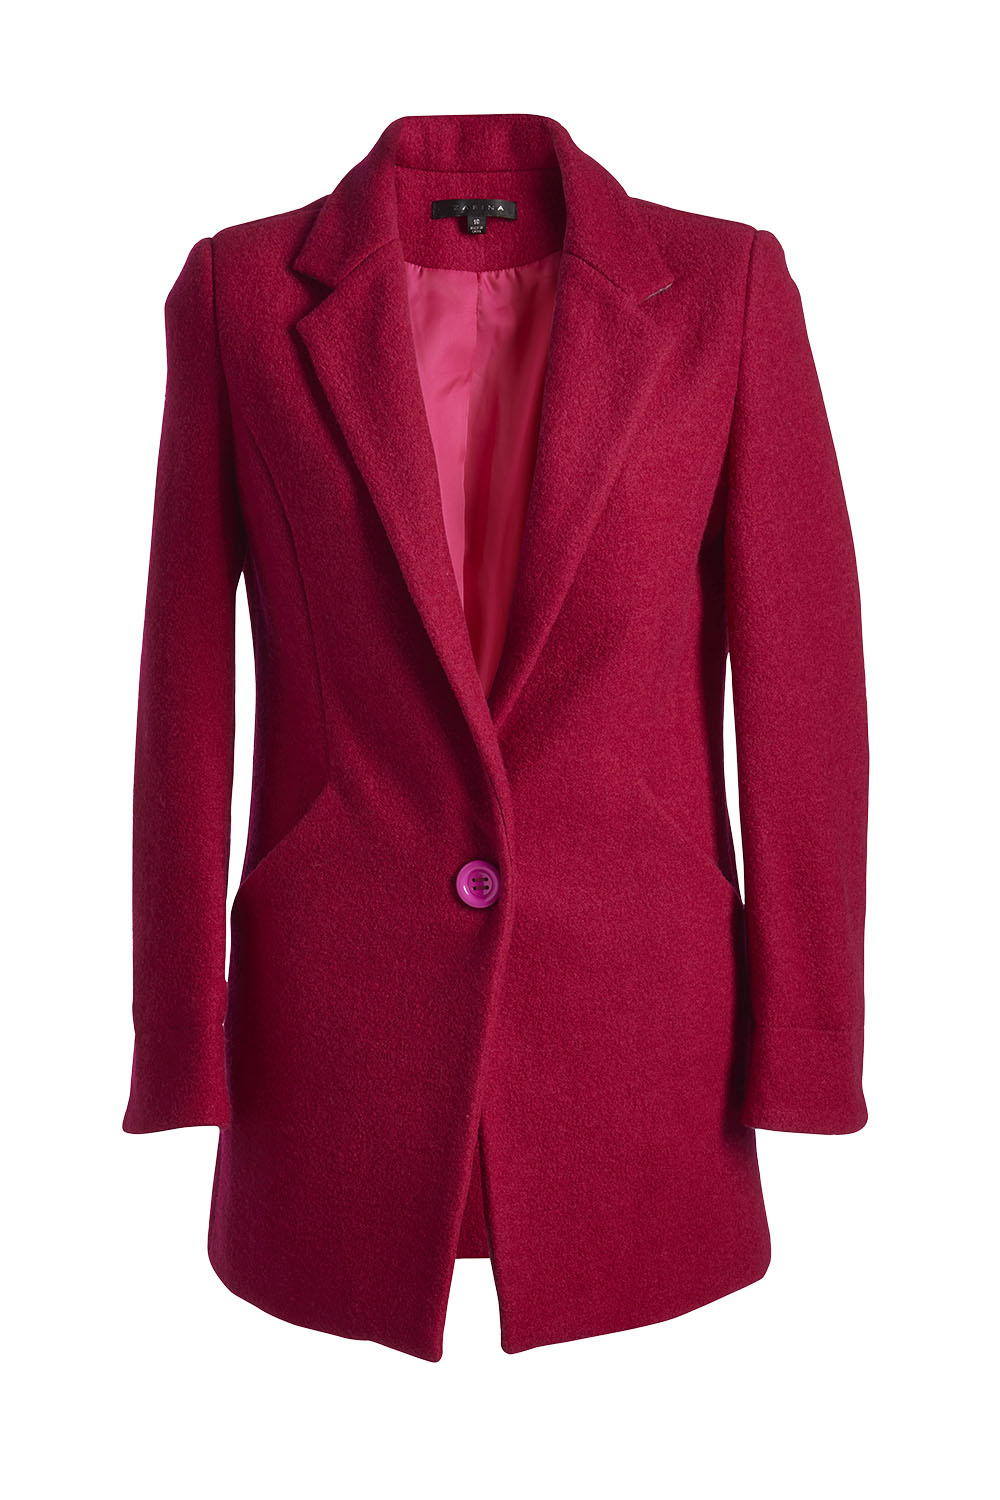 Coat, $279, by Zafina.